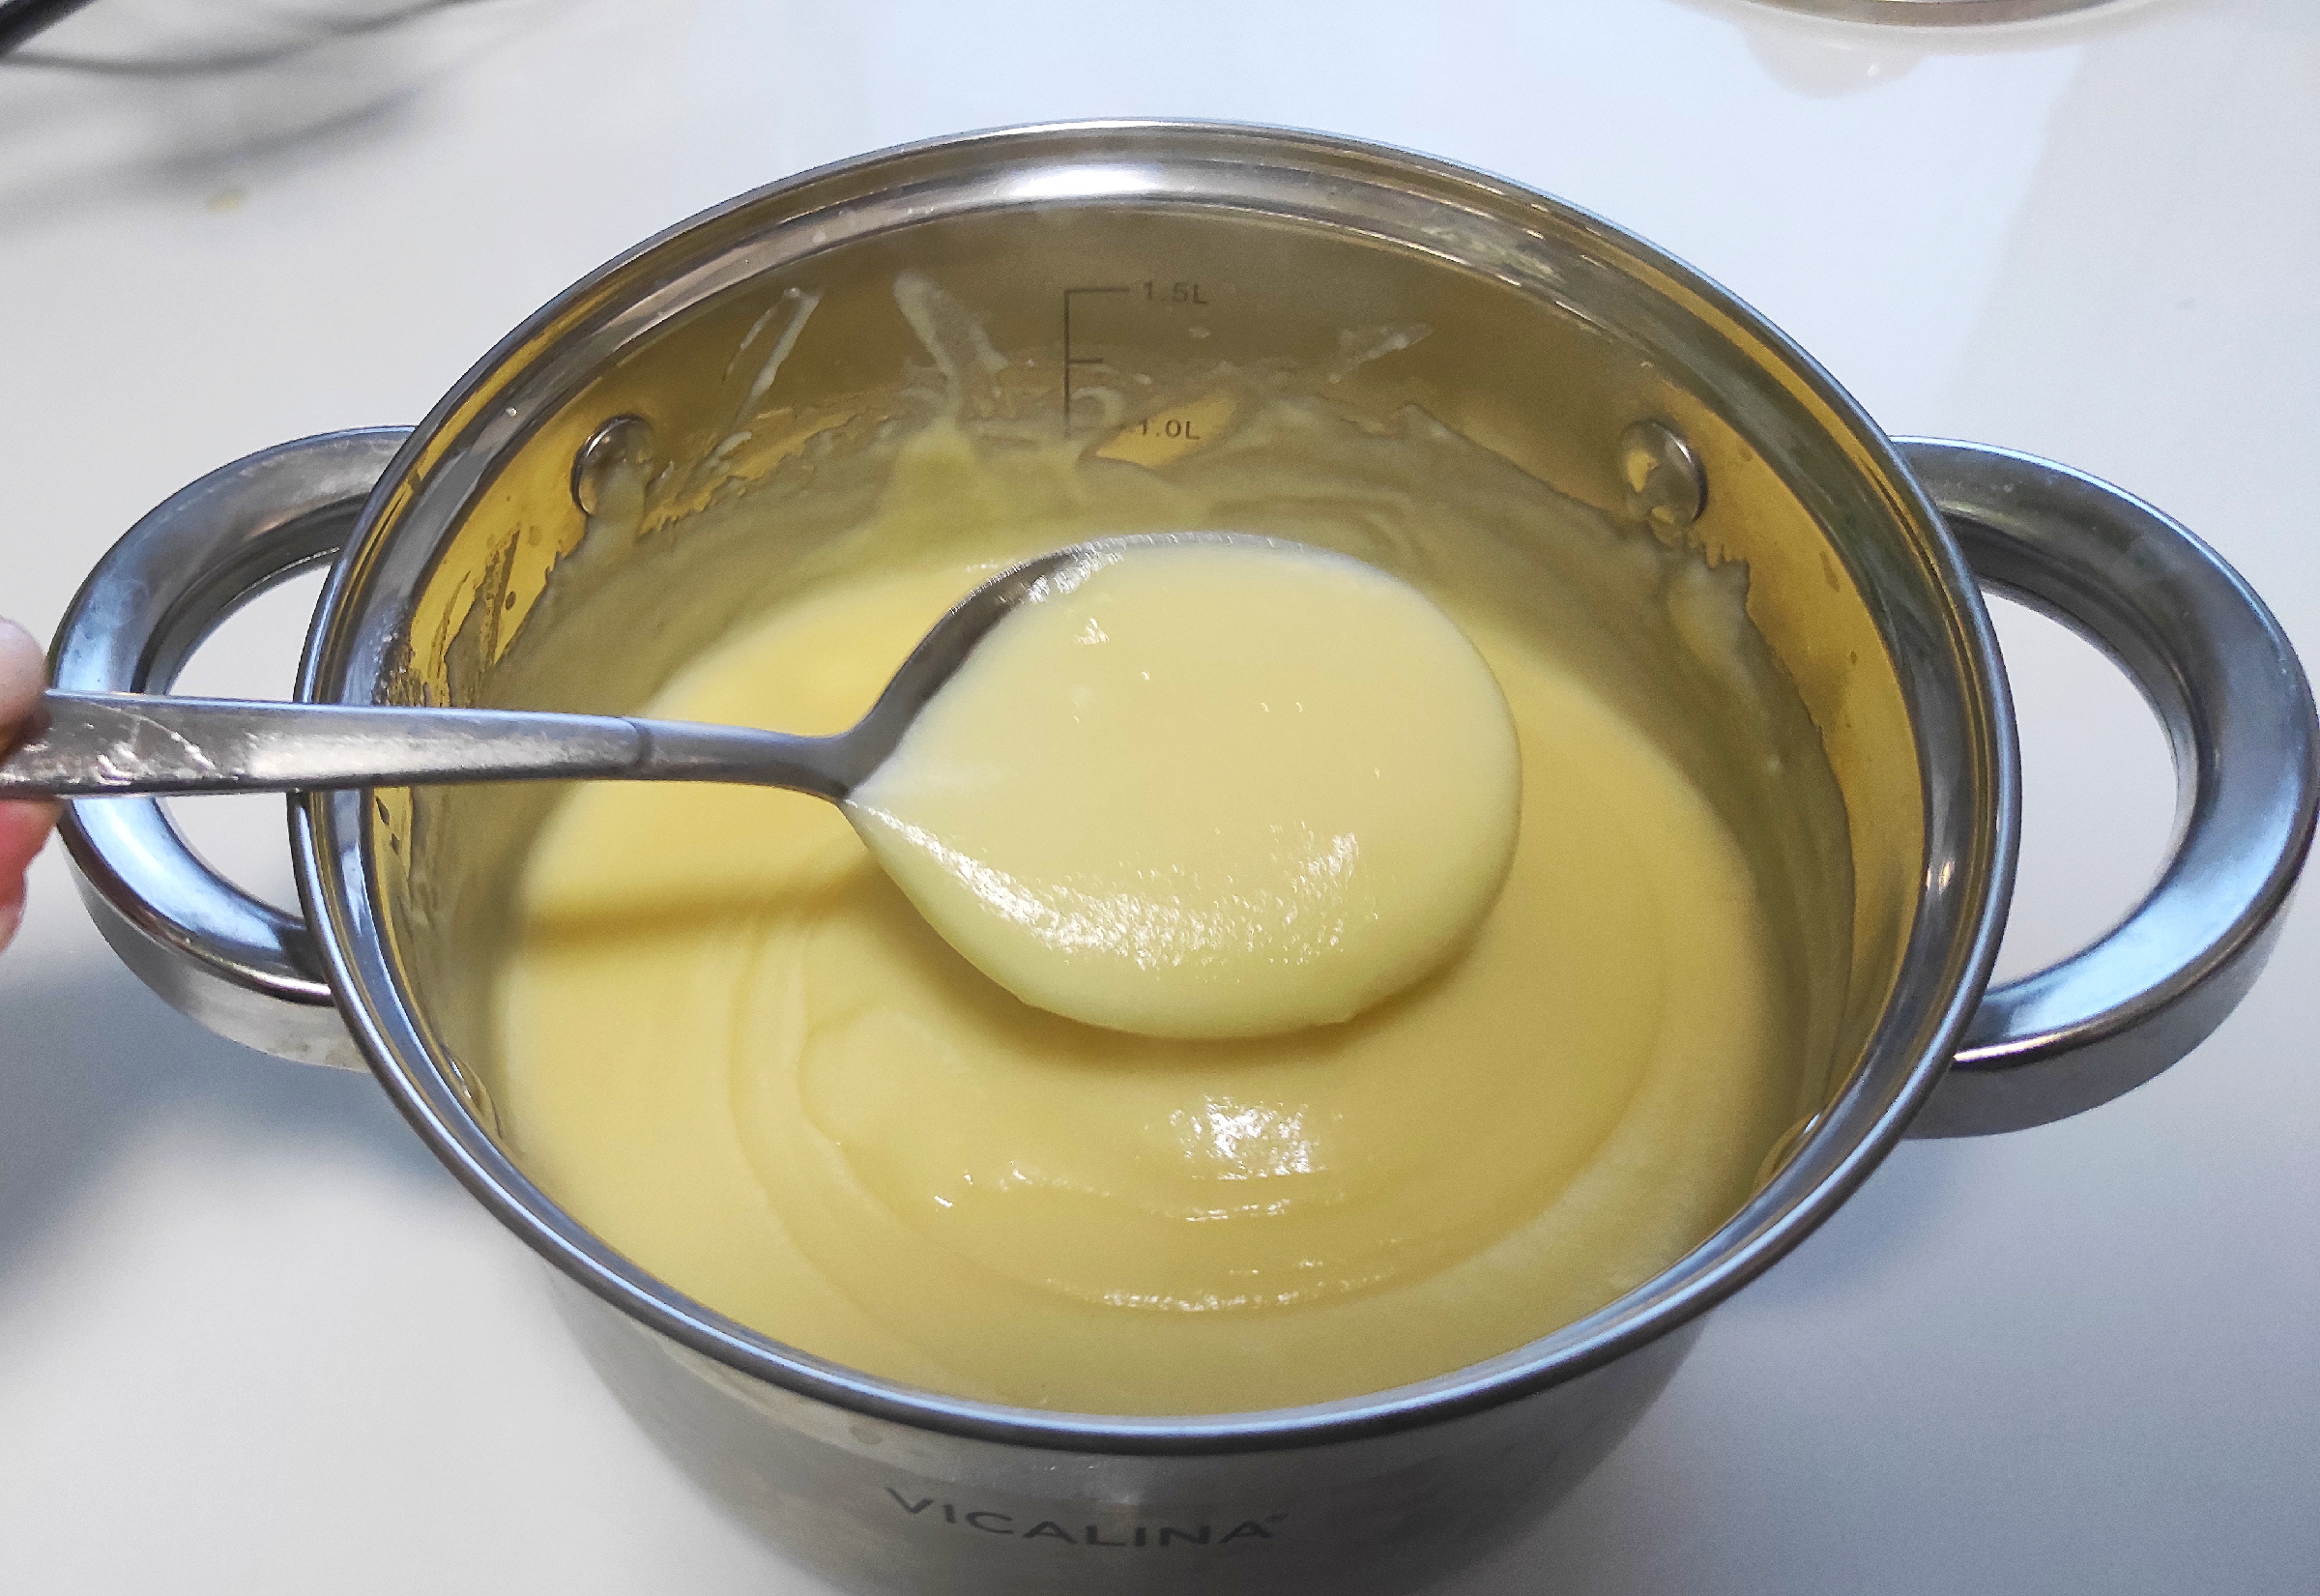 Крем молоко яйцо сахар масло мука. Крем для торта фото не получился.